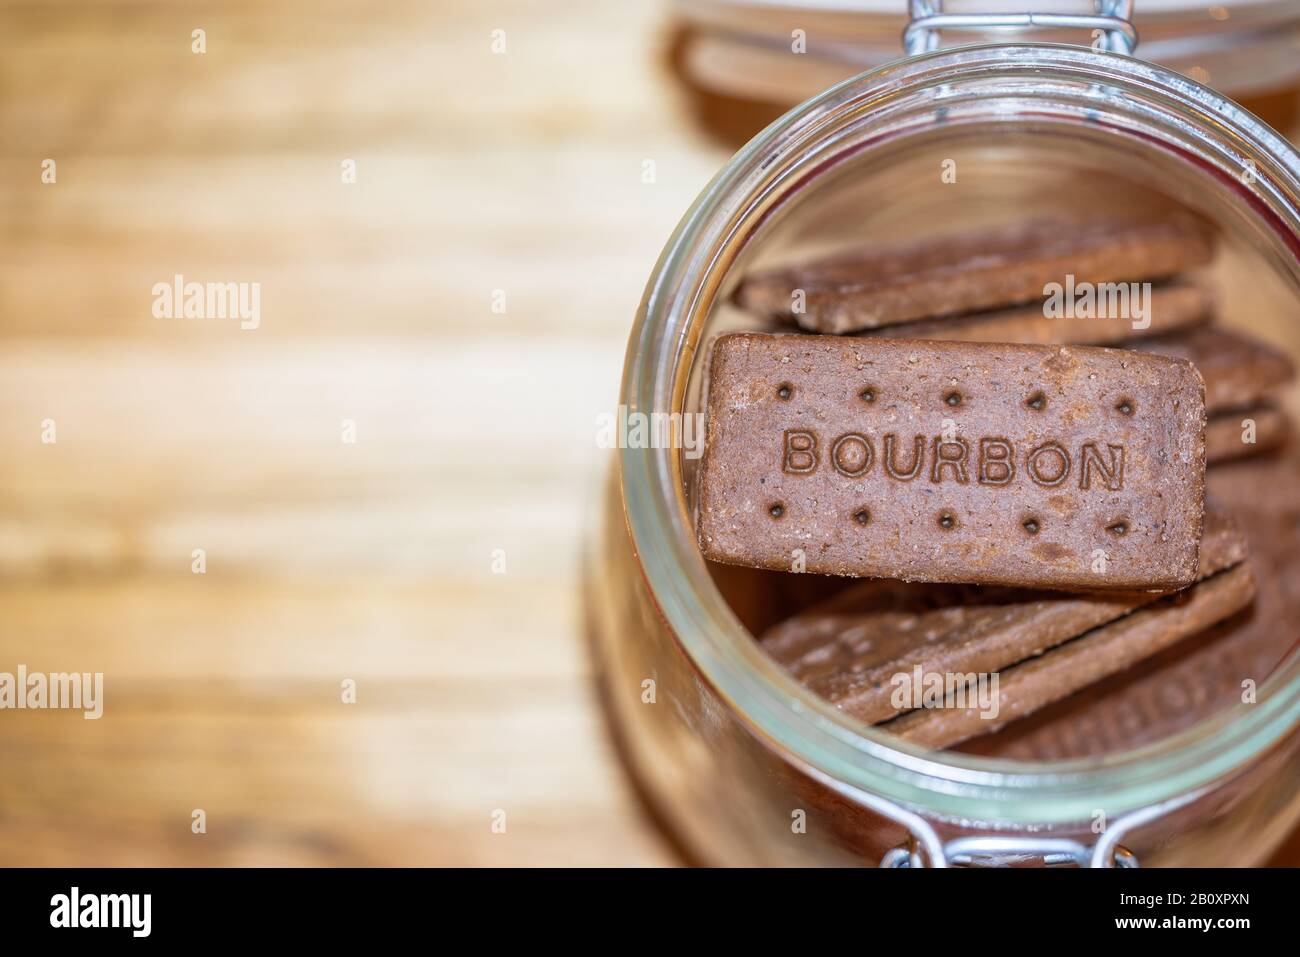 Ein offener Glasbecher mit Bourbon-Schokoladengebäck im Inneren Stockfoto